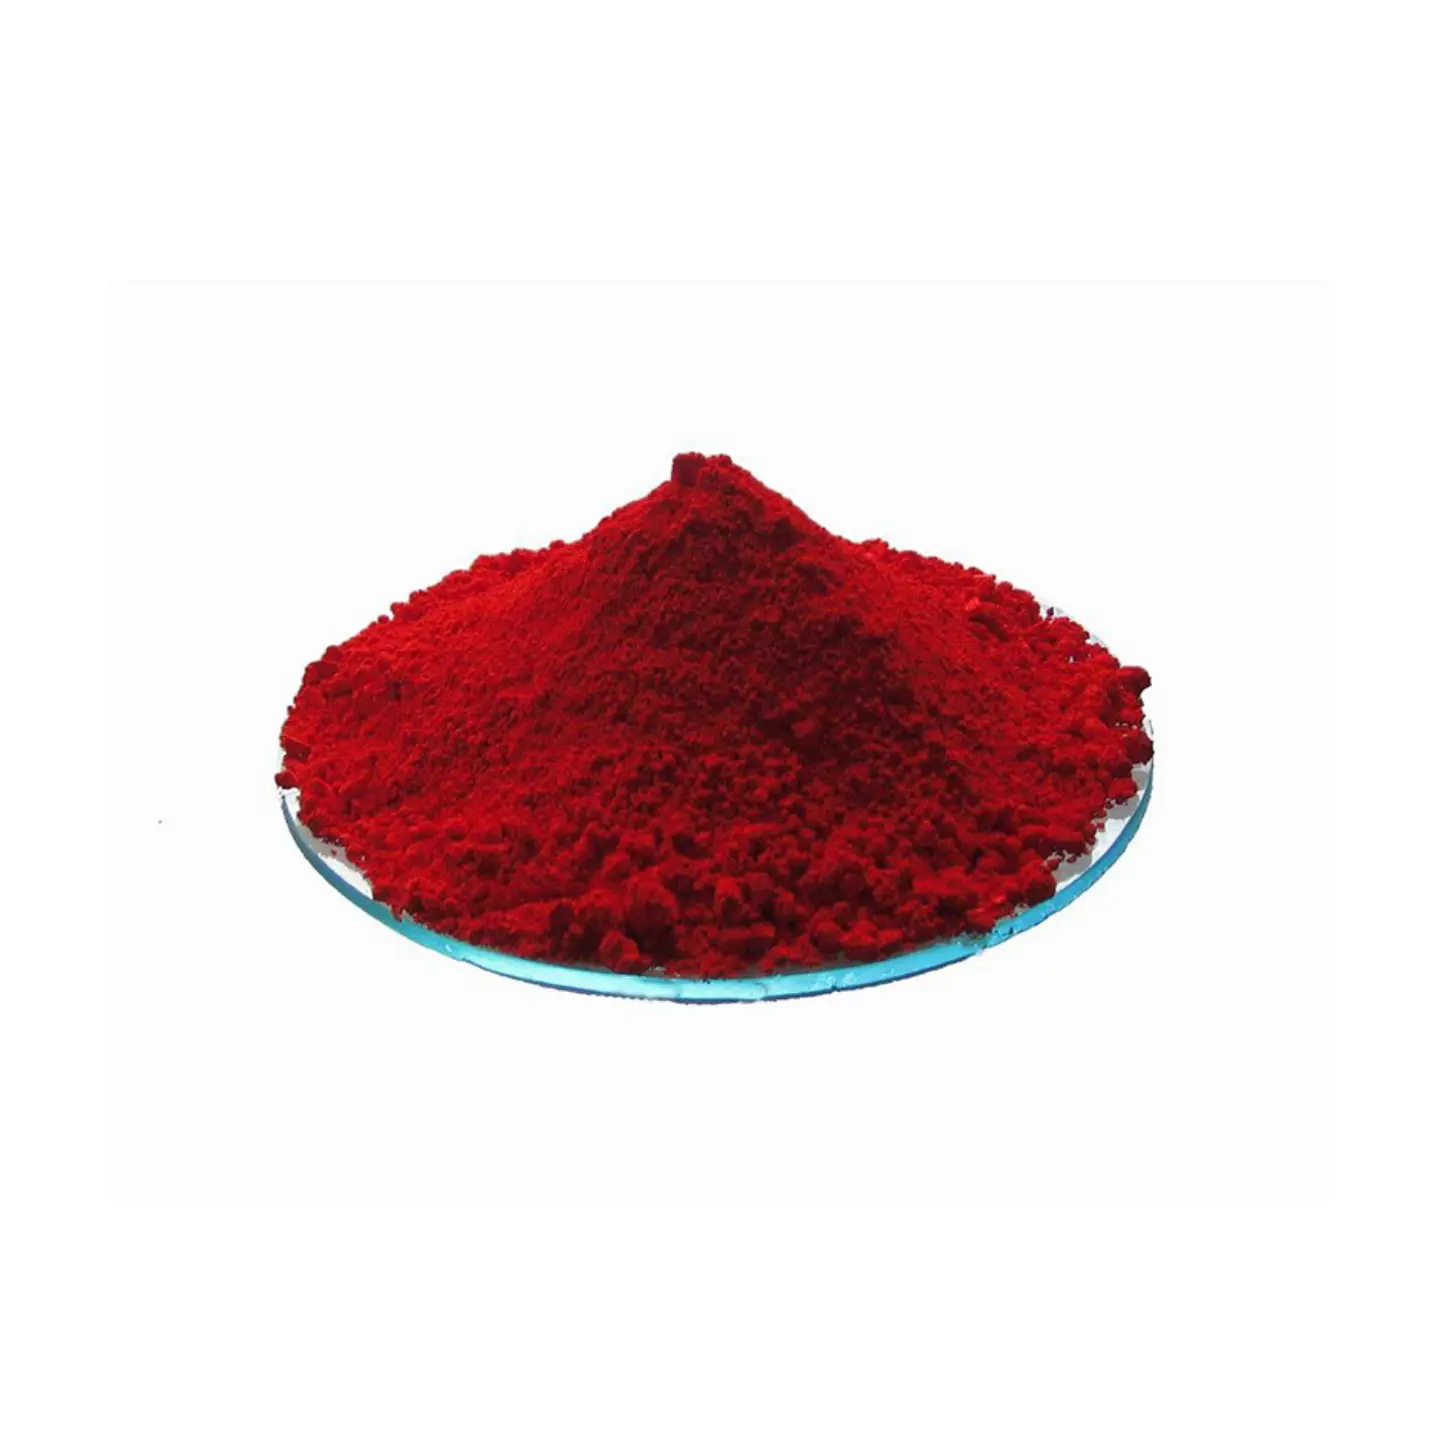 Good sellinq pigmen krom merah cas 12656-85-8 chromevermilion red Date merah sulfat untuk plastik atau pelapis pewarna kulit